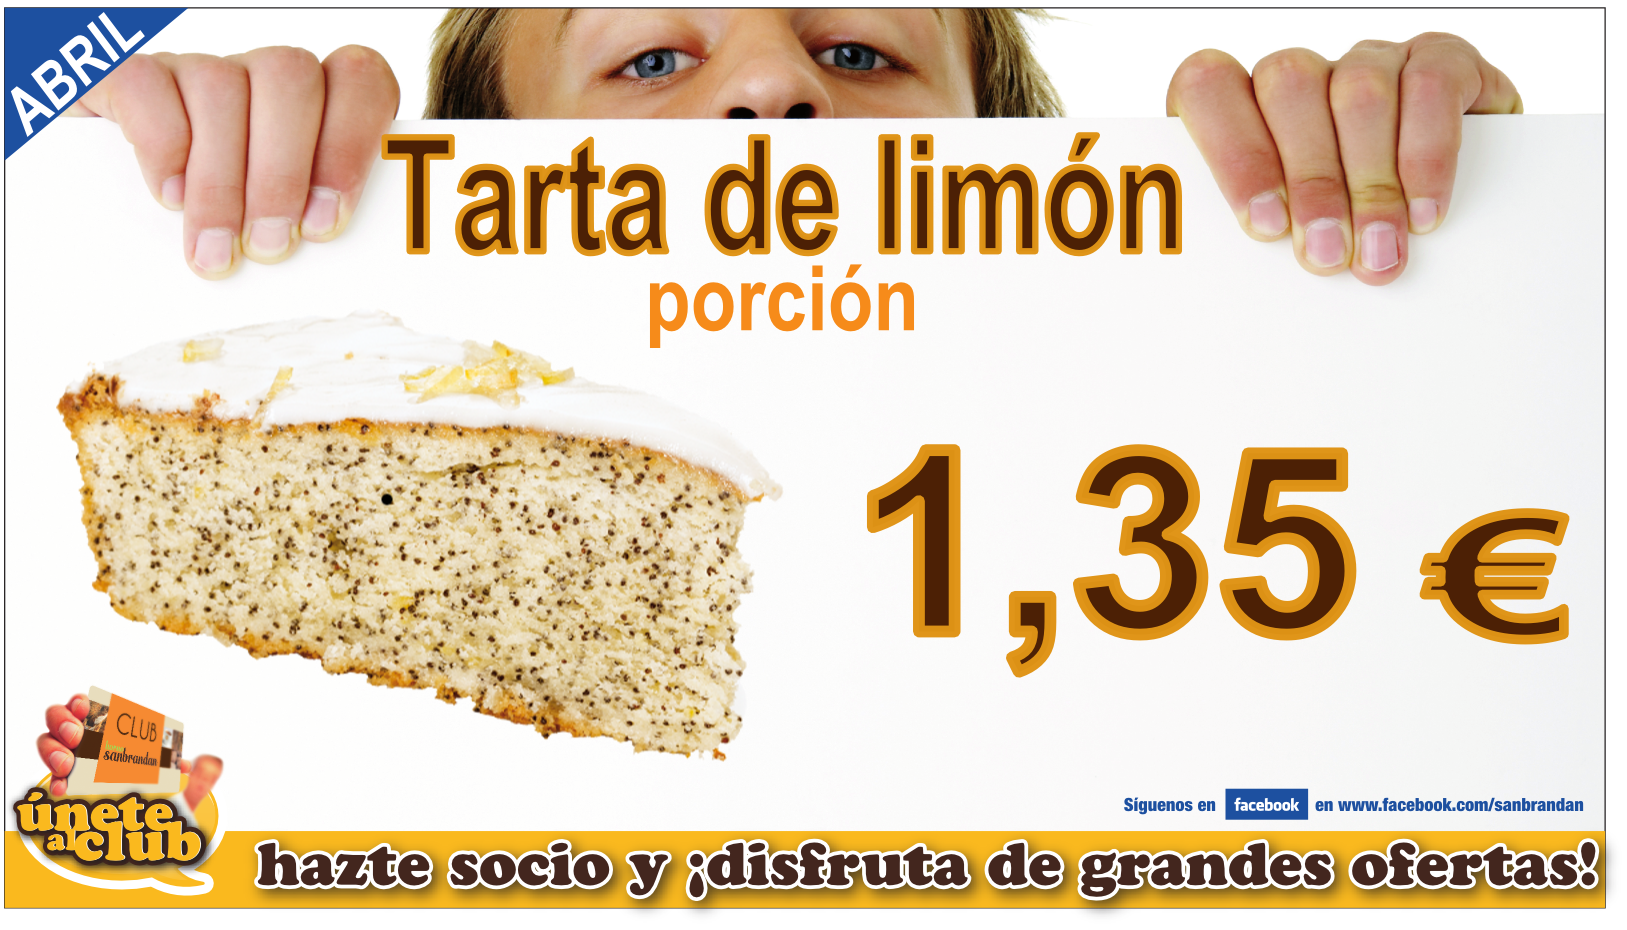 Porción tarta de limón 1,35 €